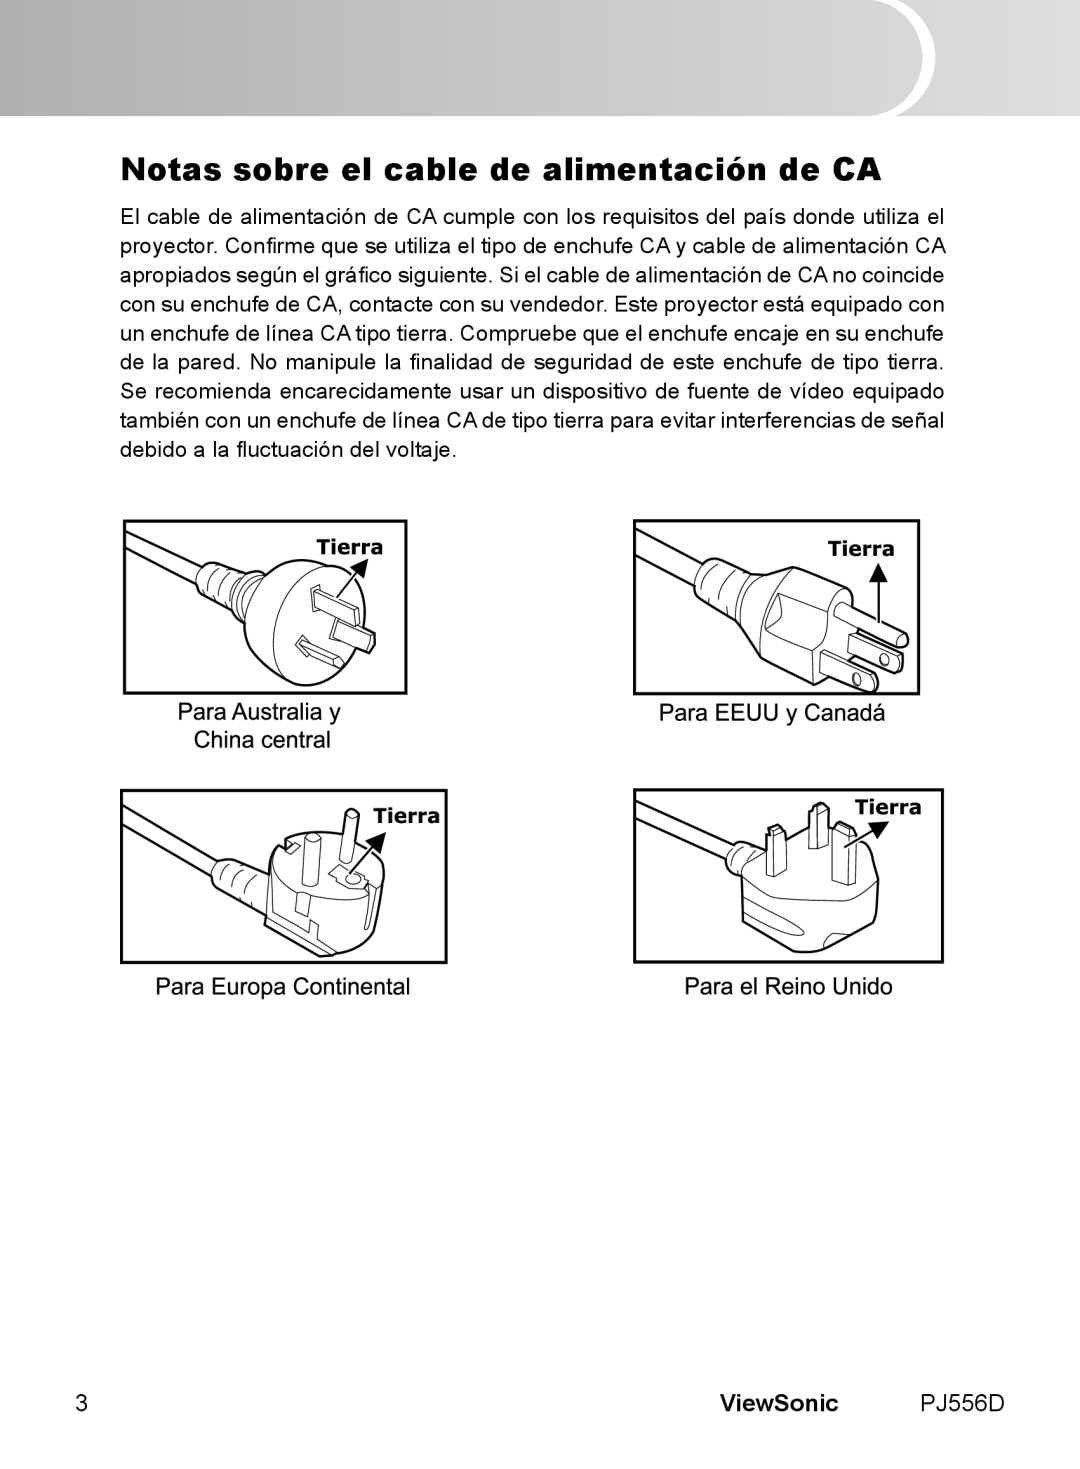 ViewSonic manual Notas sobre el cable de alimentación de CA, ViewSonic PJ556D 